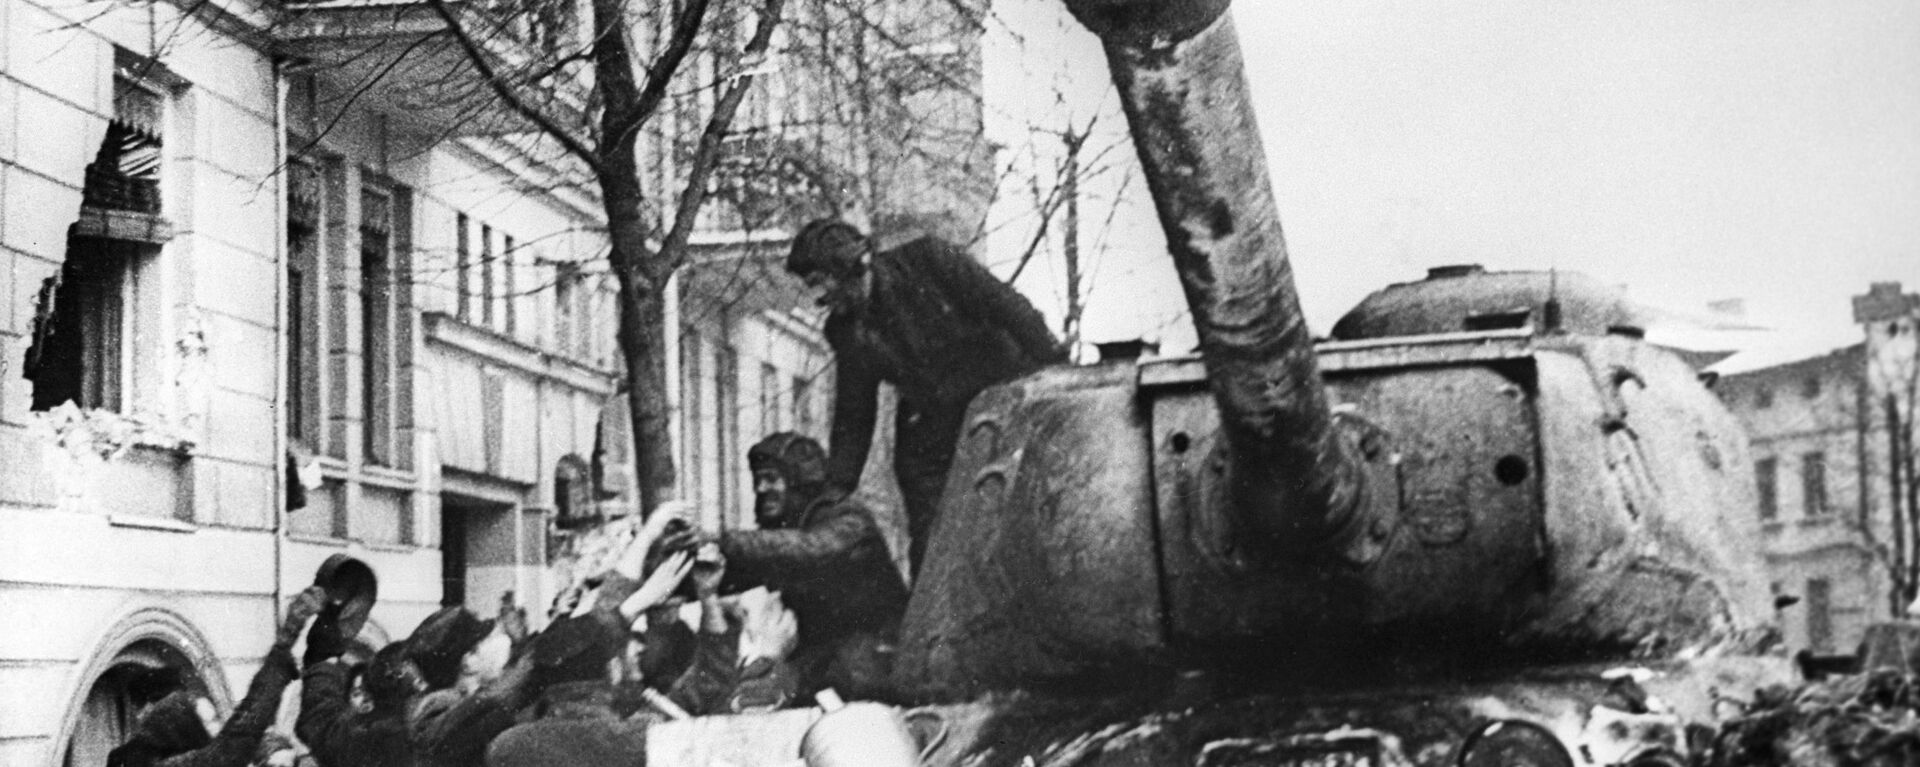 أهالي مدينة بوزنان المحرر من ألمانيا النازية، يرحبون بالجنود السوفيتيين على متن الدبابة الثقيلة إي إس-2 (دبابة يوسف ستالن)، بولندا 23 فبراير 1945 - سبوتنيك عربي, 1920, 09.06.2020